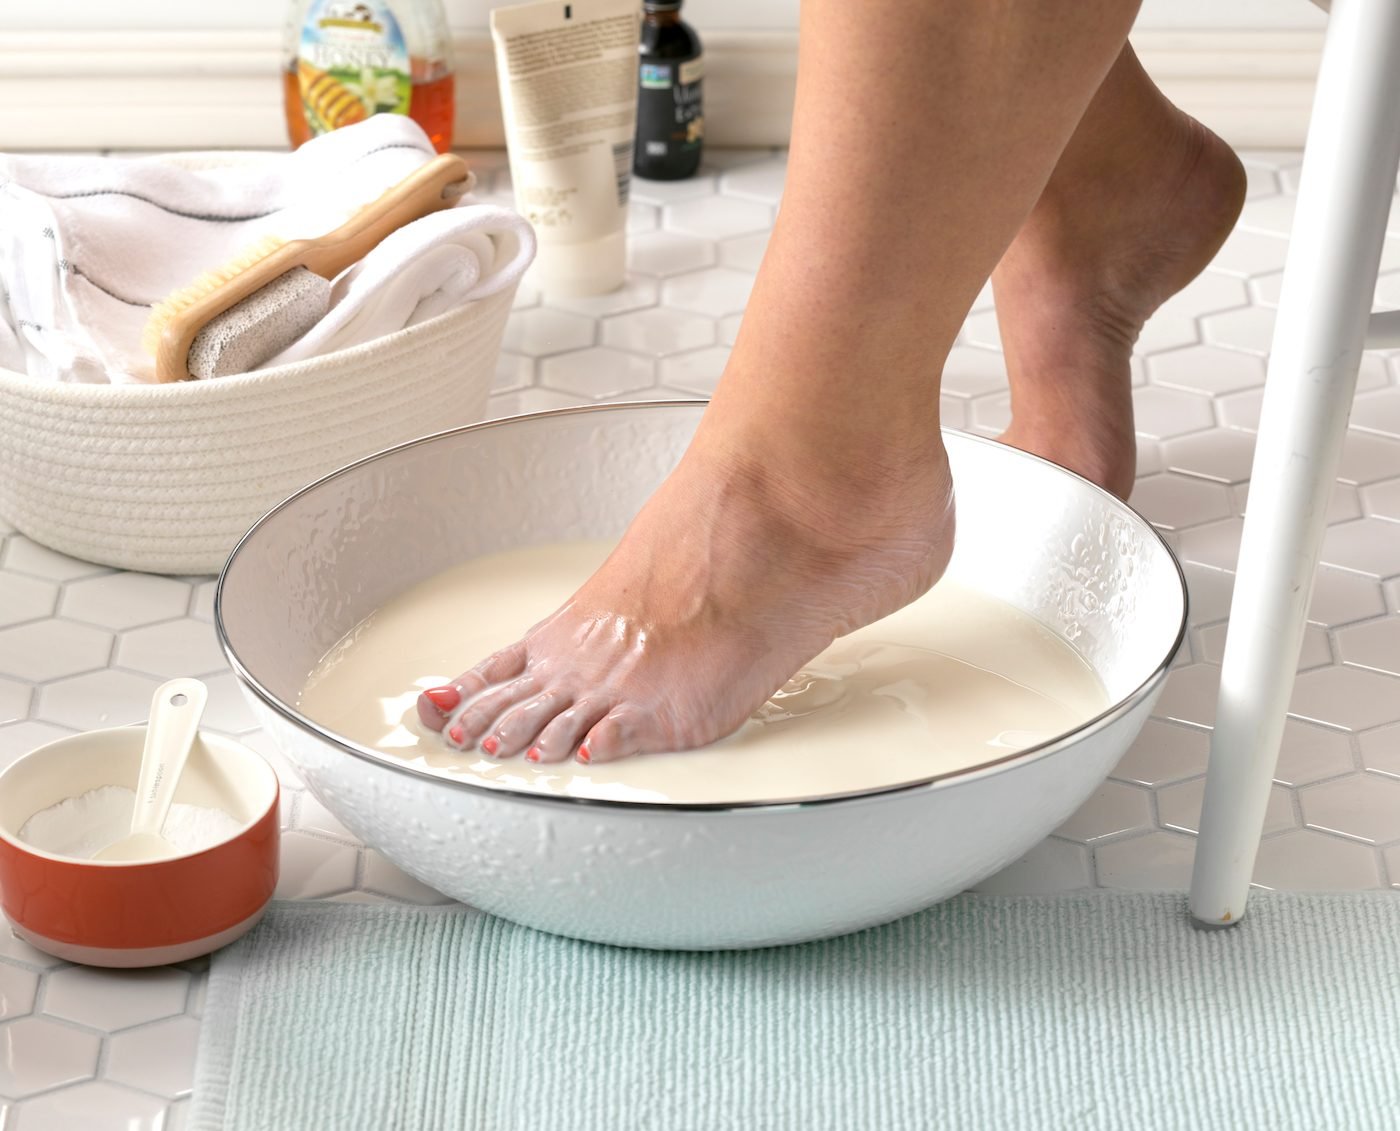 Chuẩn bị nước ngâm chân ấm bằng cách thêm một cốc sữa nóng vào đó. Ngâm chân của bạn trong đó một thời gian. Làm điều này mỗi ngày và bạn sẽ sớm yêu đôi chân mềm mại của mình!